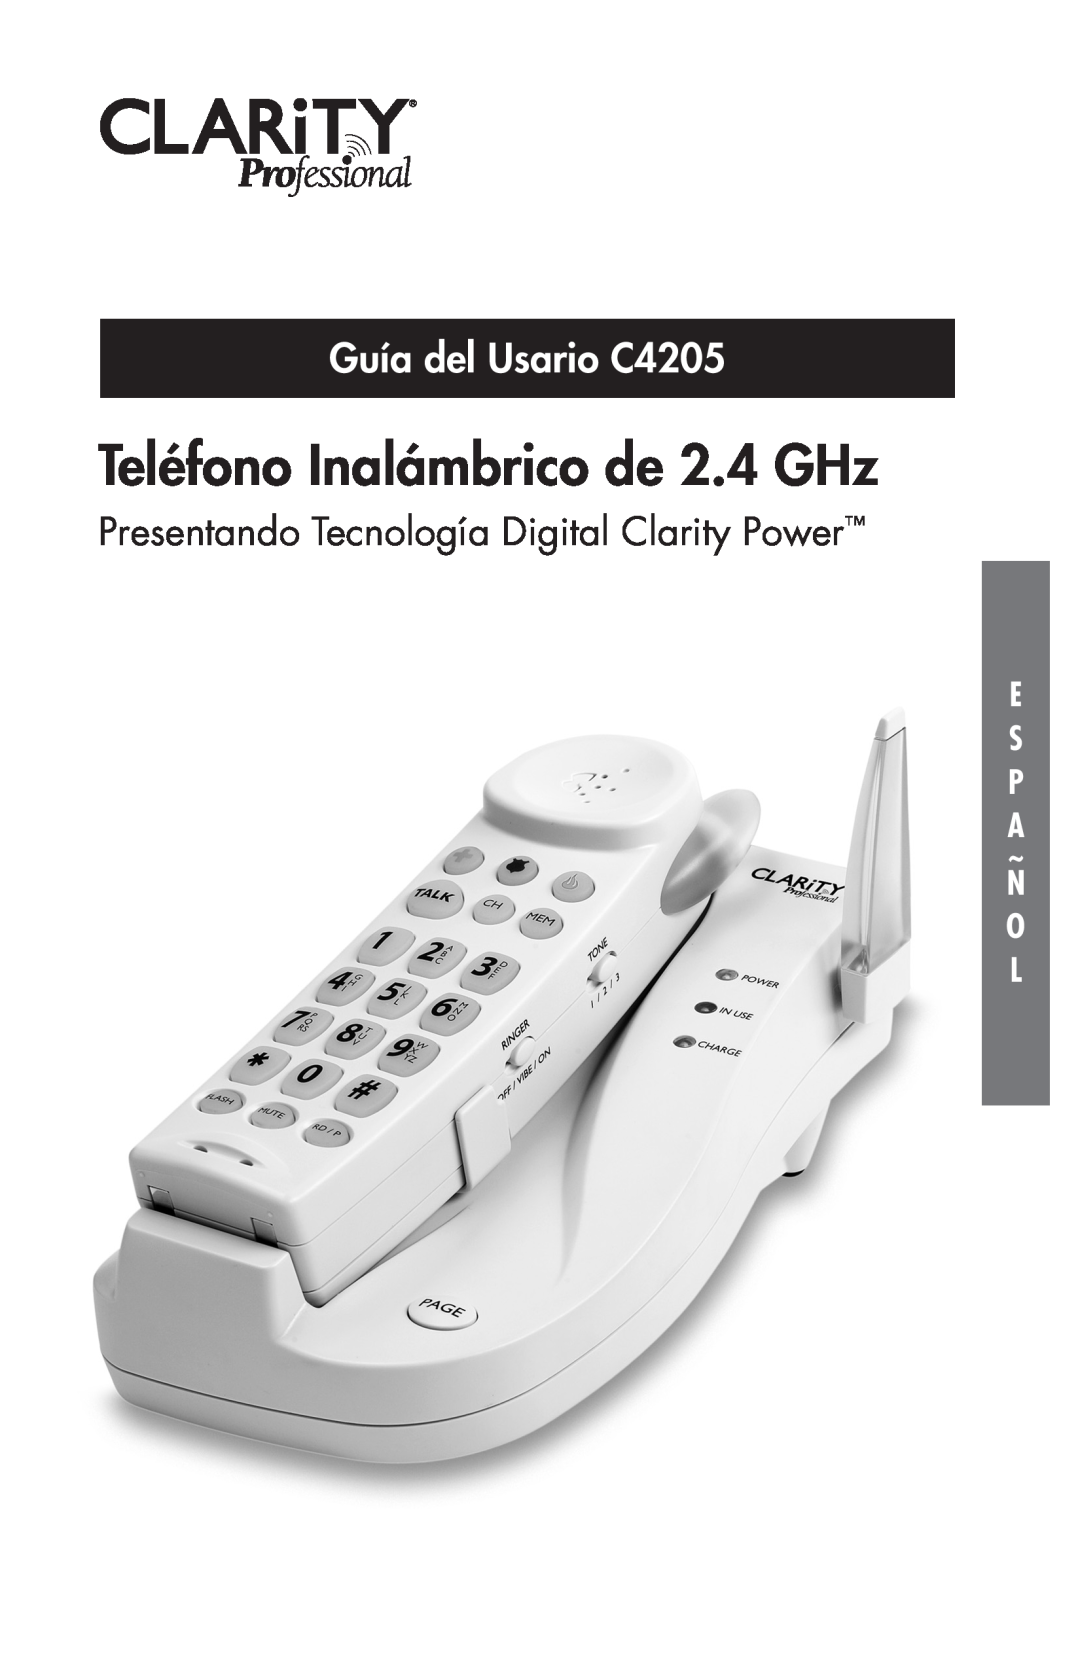 Clarity manual Teléfono Inalámbrico de 2.4 GHz, Guía del Usario C4205, Presentando Tecnología Digital Clarity Power 